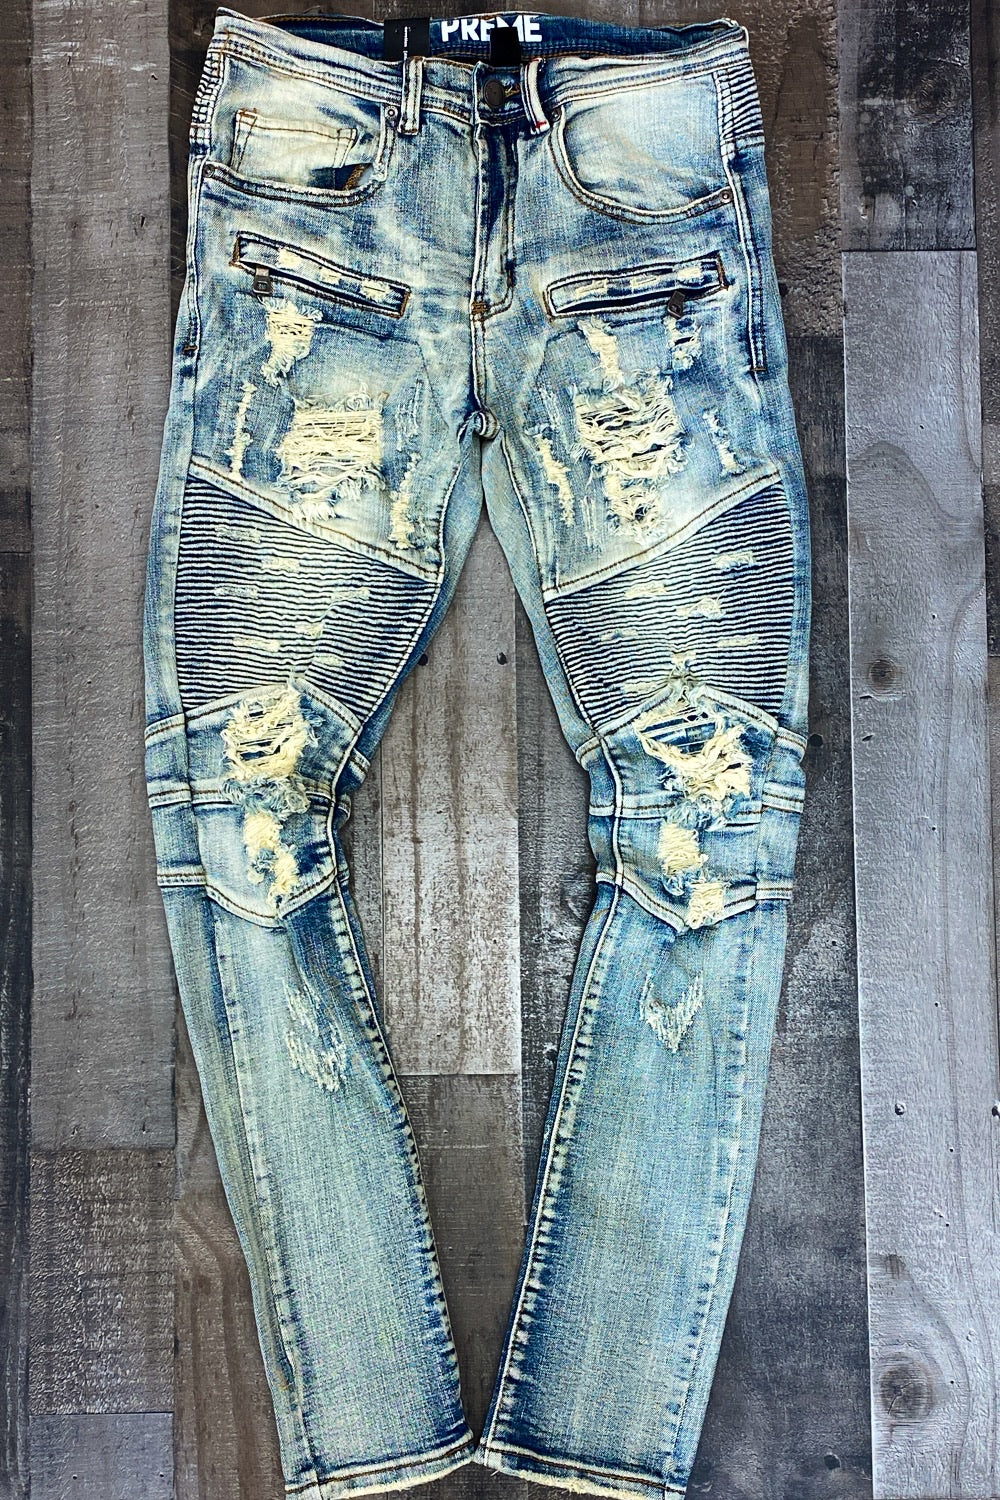 Preme- faded indigo jeans